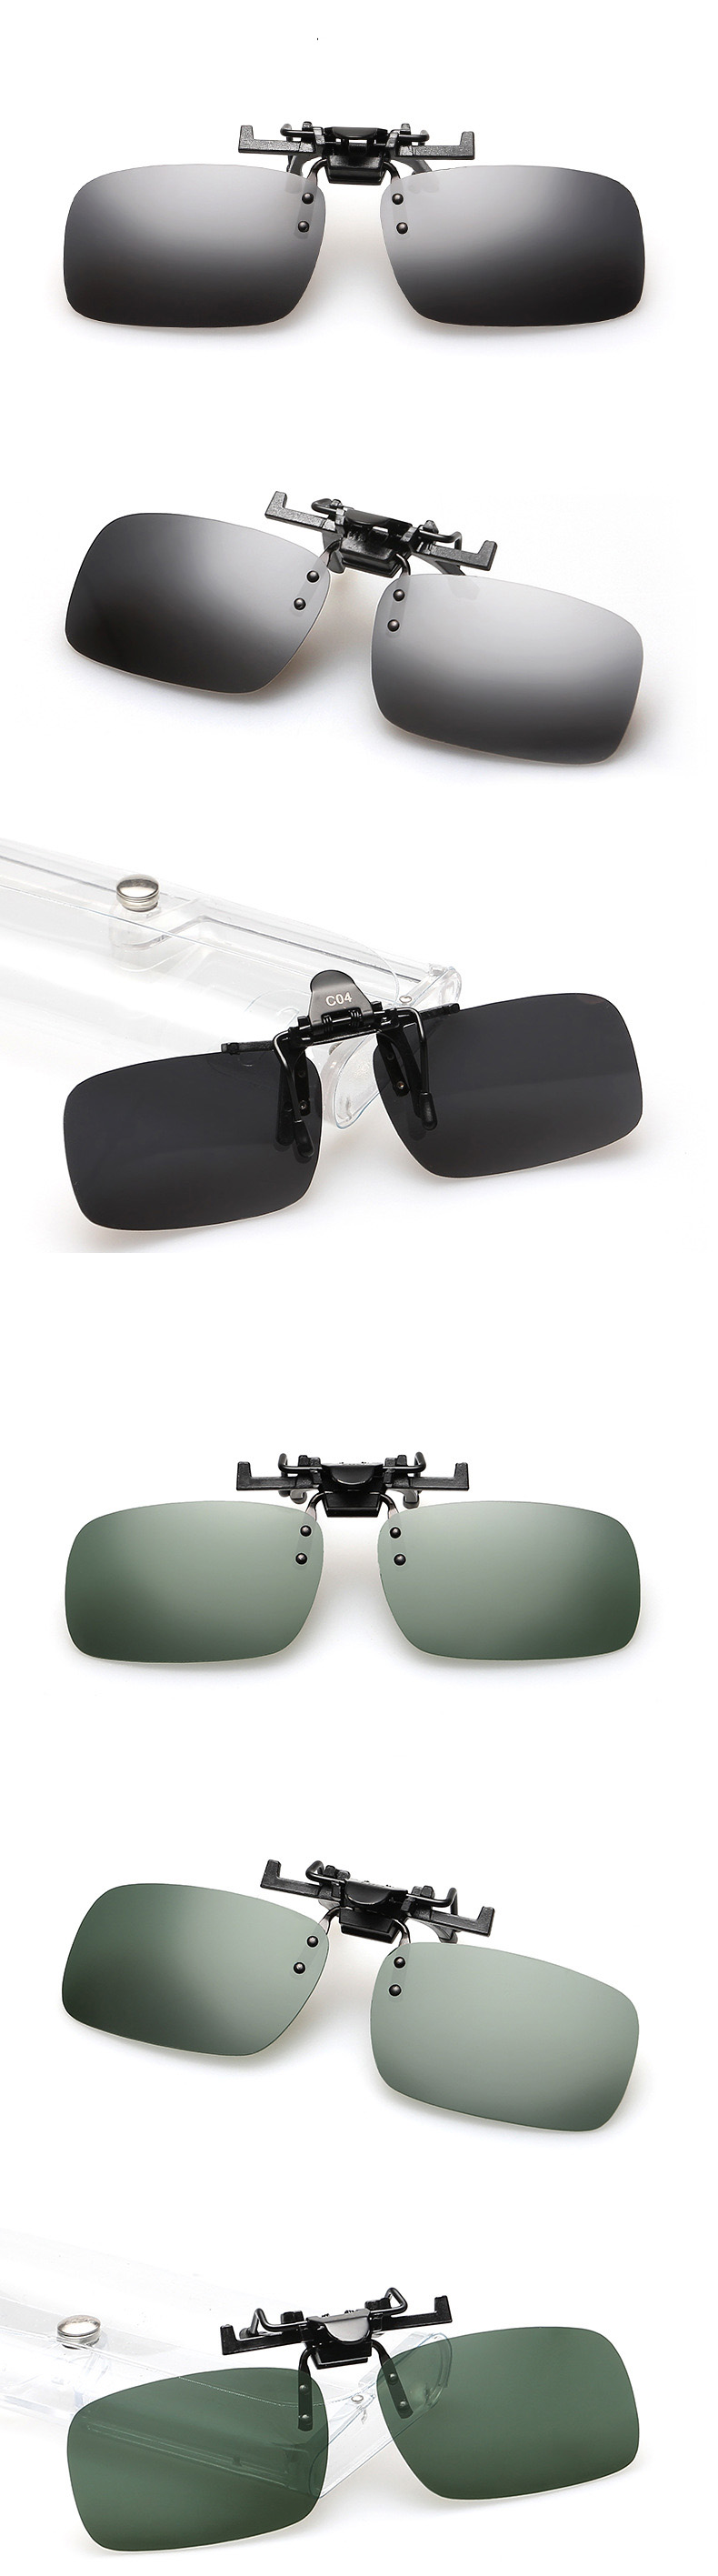 Polarized-Clip-On-Sun-Glassess-Glasses-Lens-Unisex-Night-Vision-Lens-995931